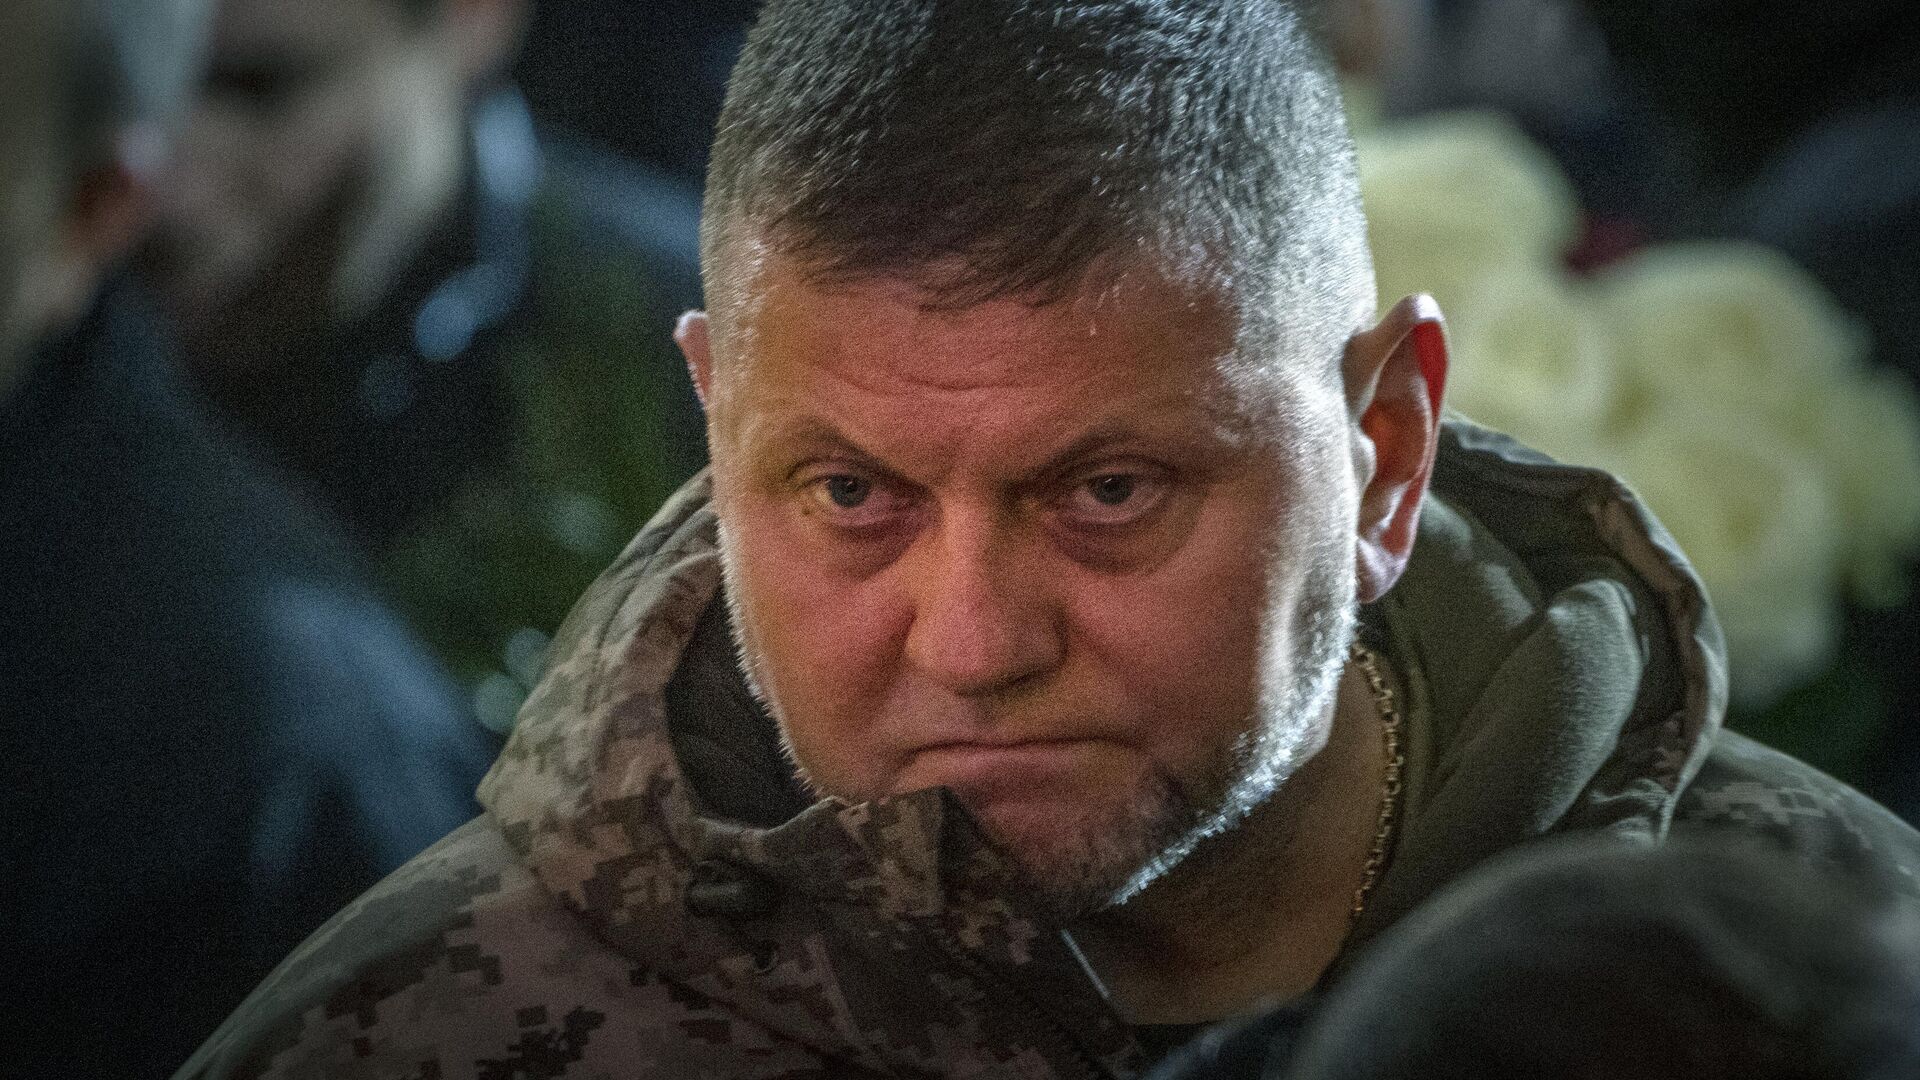 Главнокомандующий Вооруженными силами Украины Валерий Залужный1